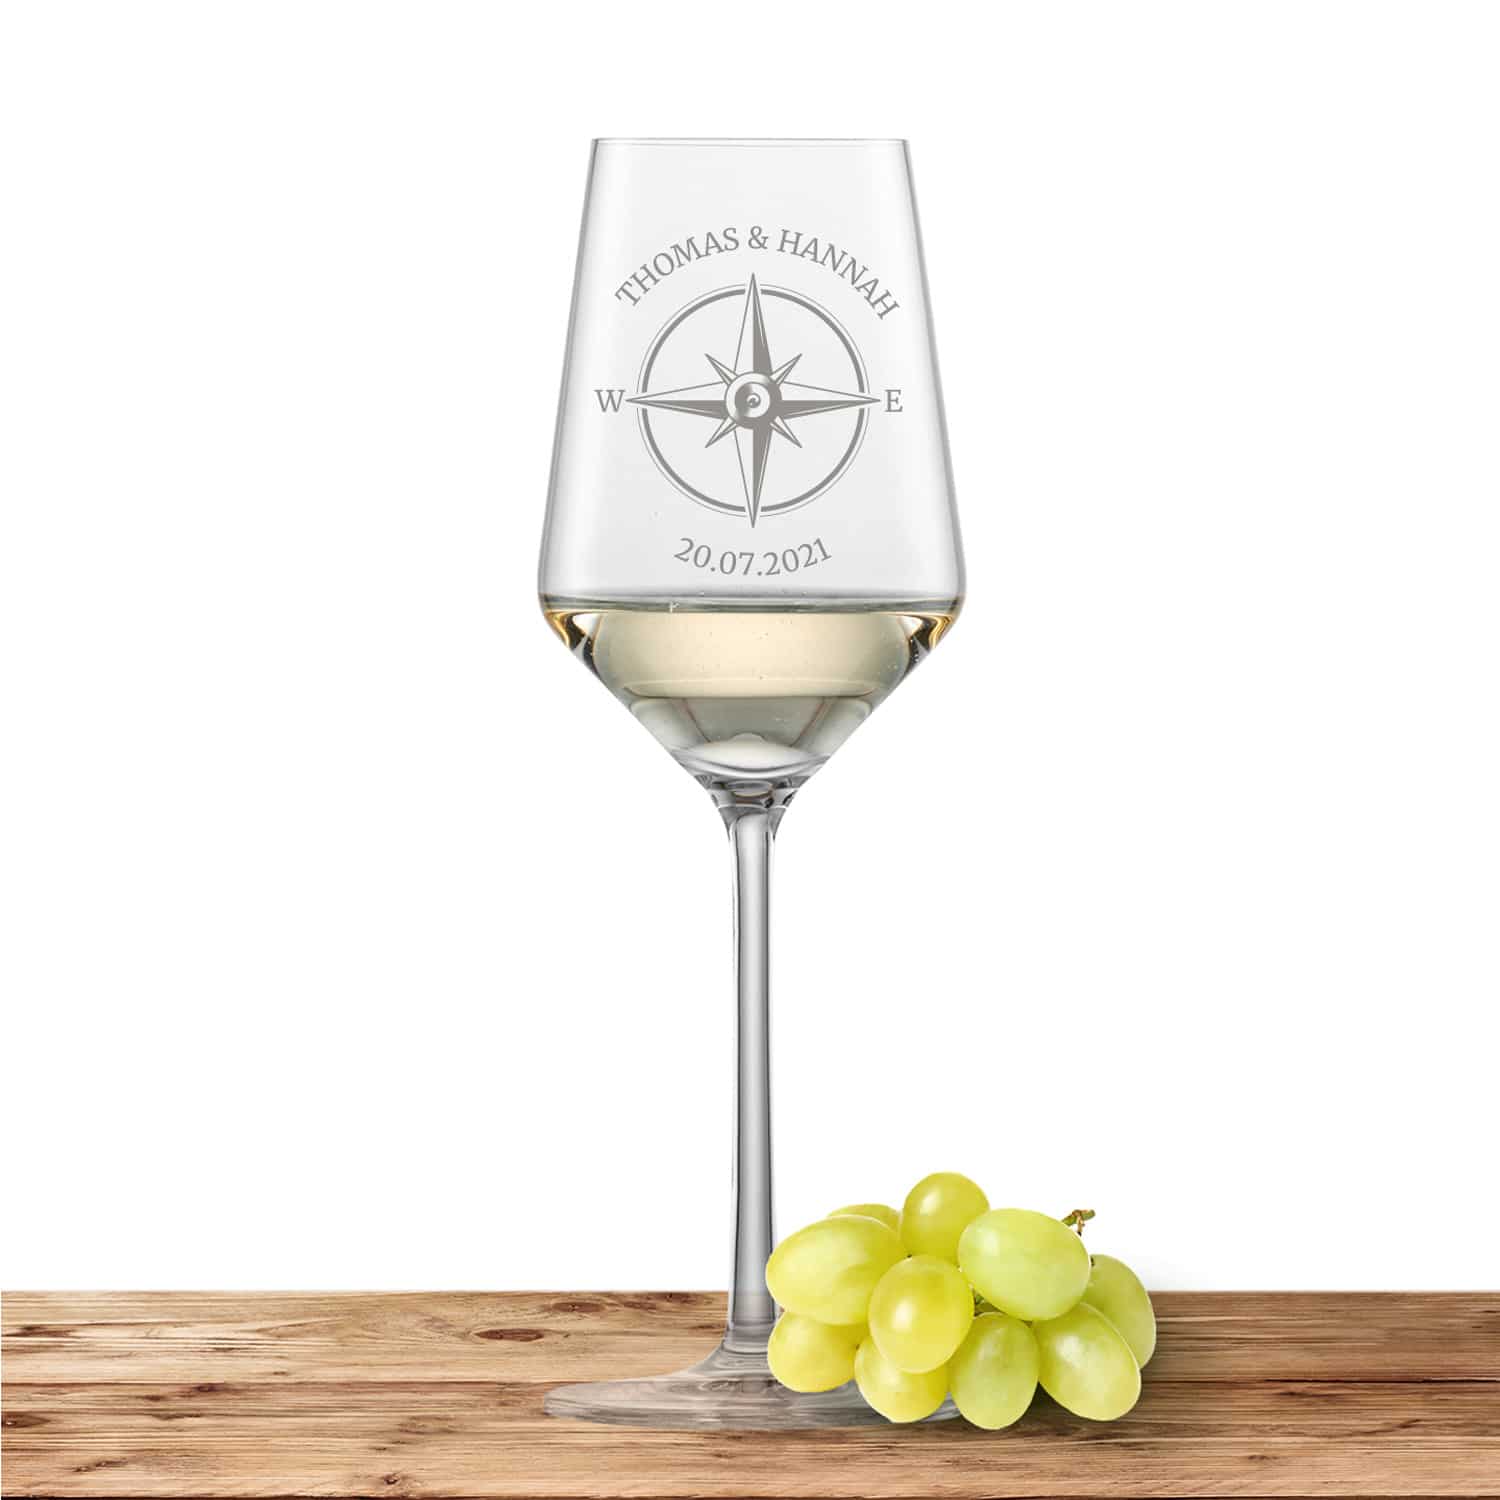 Schott Zwiesel Riesling Weißweinglas PURE mit Namen oder Wunschtext graviert (Kompass)